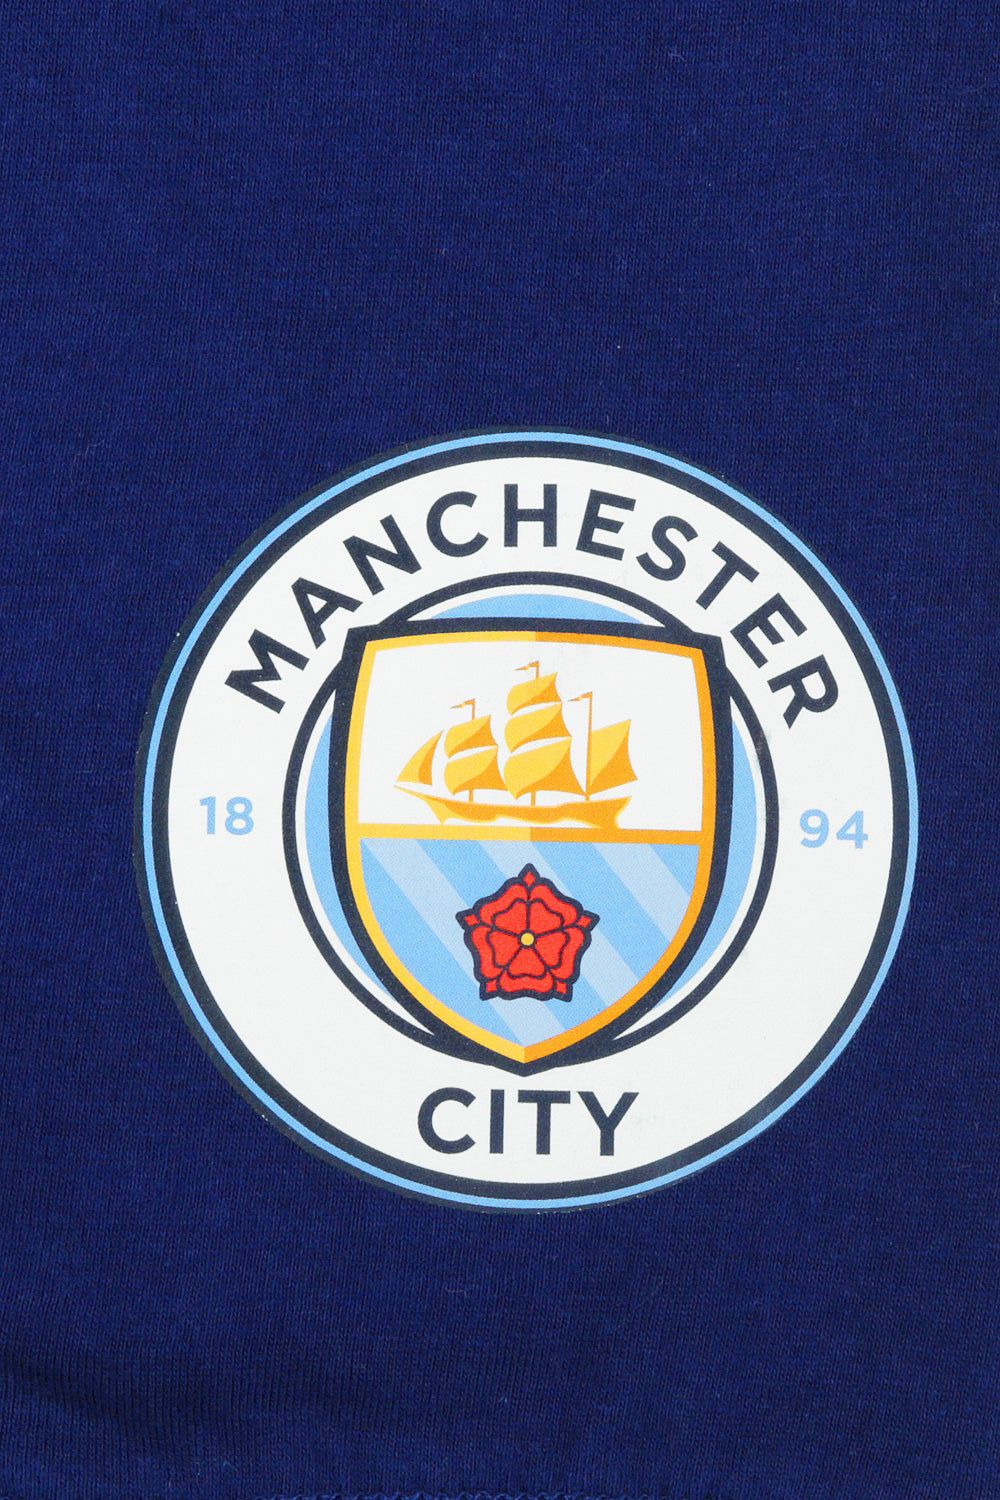 Official Manchester City FC Pyjamas - Pyjamas.com